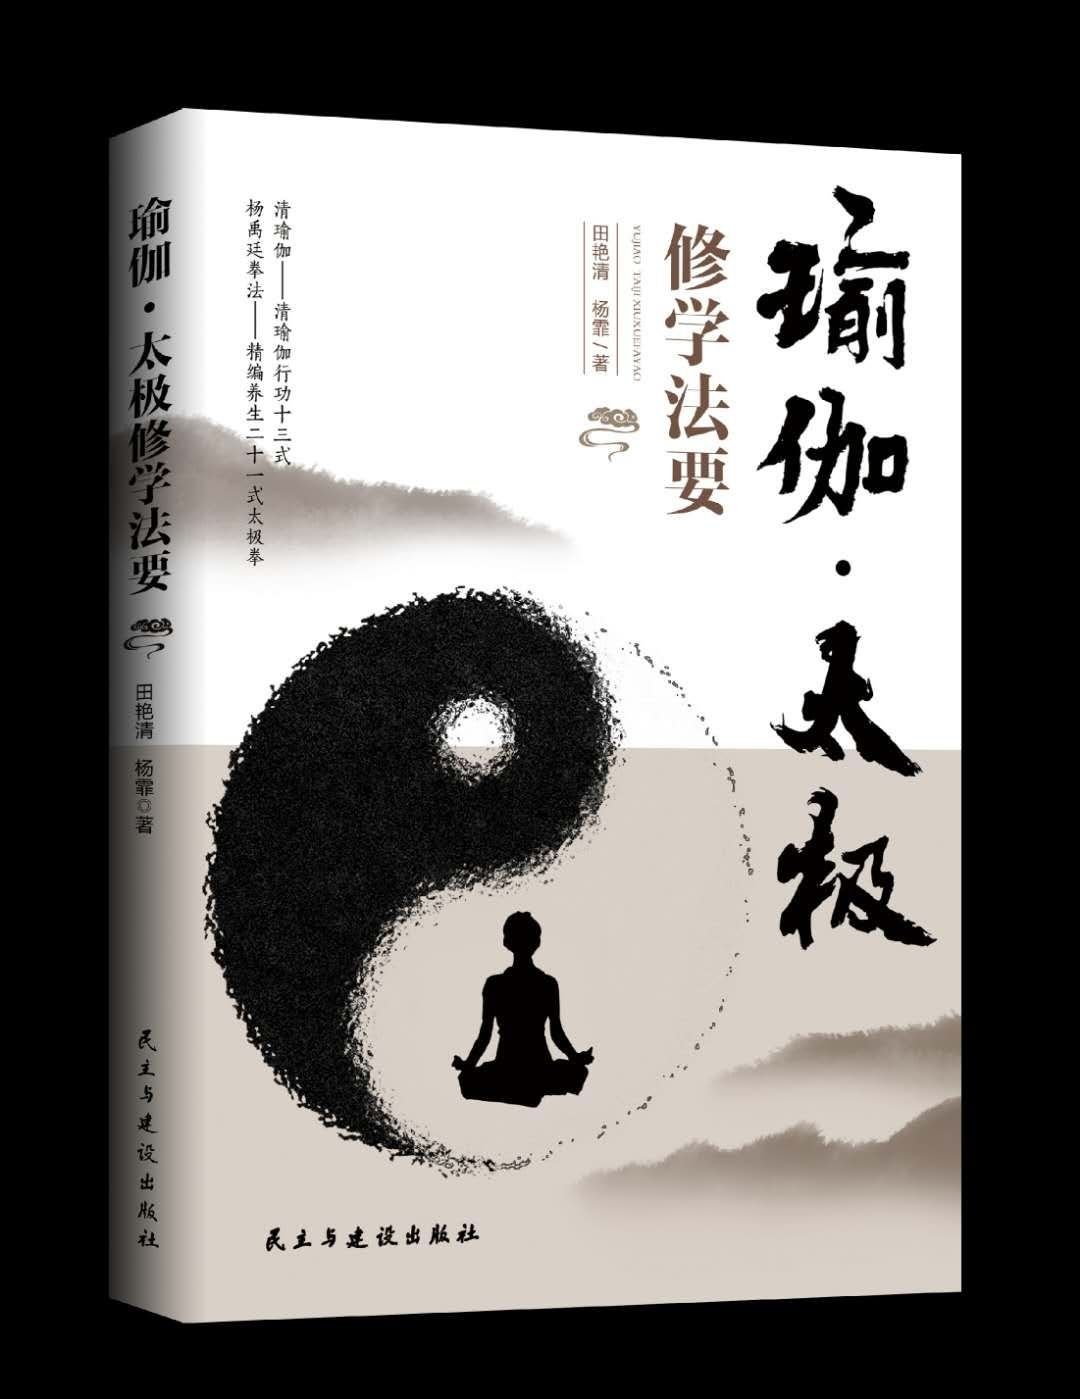 非常好的一本书，一本书中涵盖了两种修学方法，即瑜伽与太极，尤其是清瑜伽行功十三式可谓是开创了一种有中国特色，特别是太极特色的瑜伽新流派，与作者的上本《清瑜伽防御术》互为表里，可以说是为广大瑜伽爱好者提供了一条修习瑜伽的新方法，带来了一种新体验！而太极篇则是杨禹廷宗师的家人（长孙杨鑫荣，长重孙杨少云），在传统杨禹廷83式太极拳的基础上，总结，精编出的一套方便大家练习，强调原则，注重细节的新套路！好书，支持！